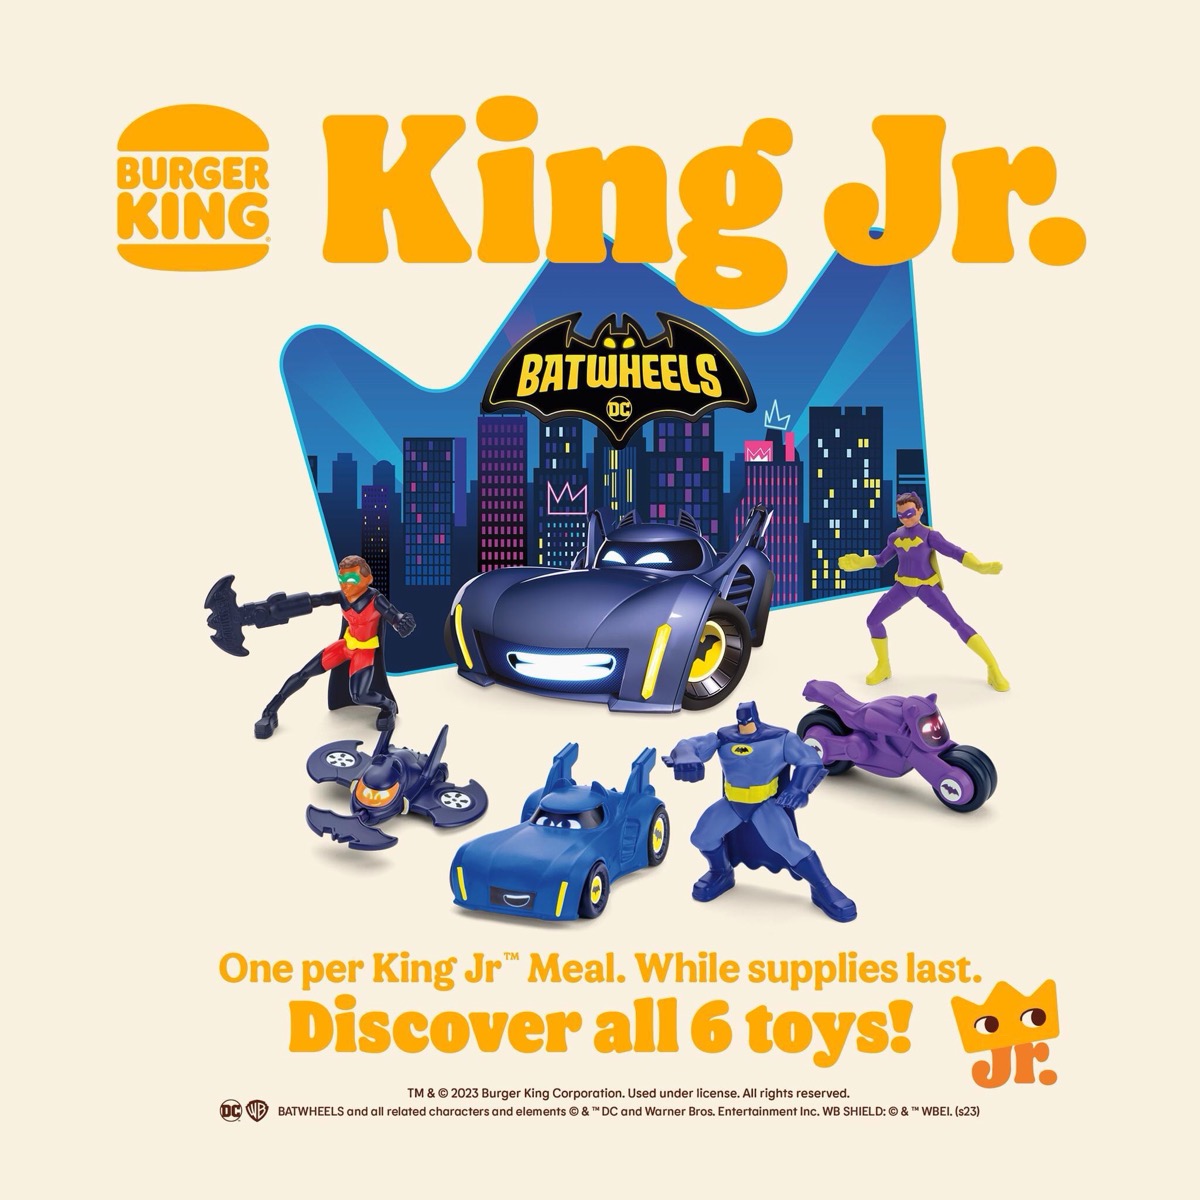 Burger King Kids Meal Toys BatWheels